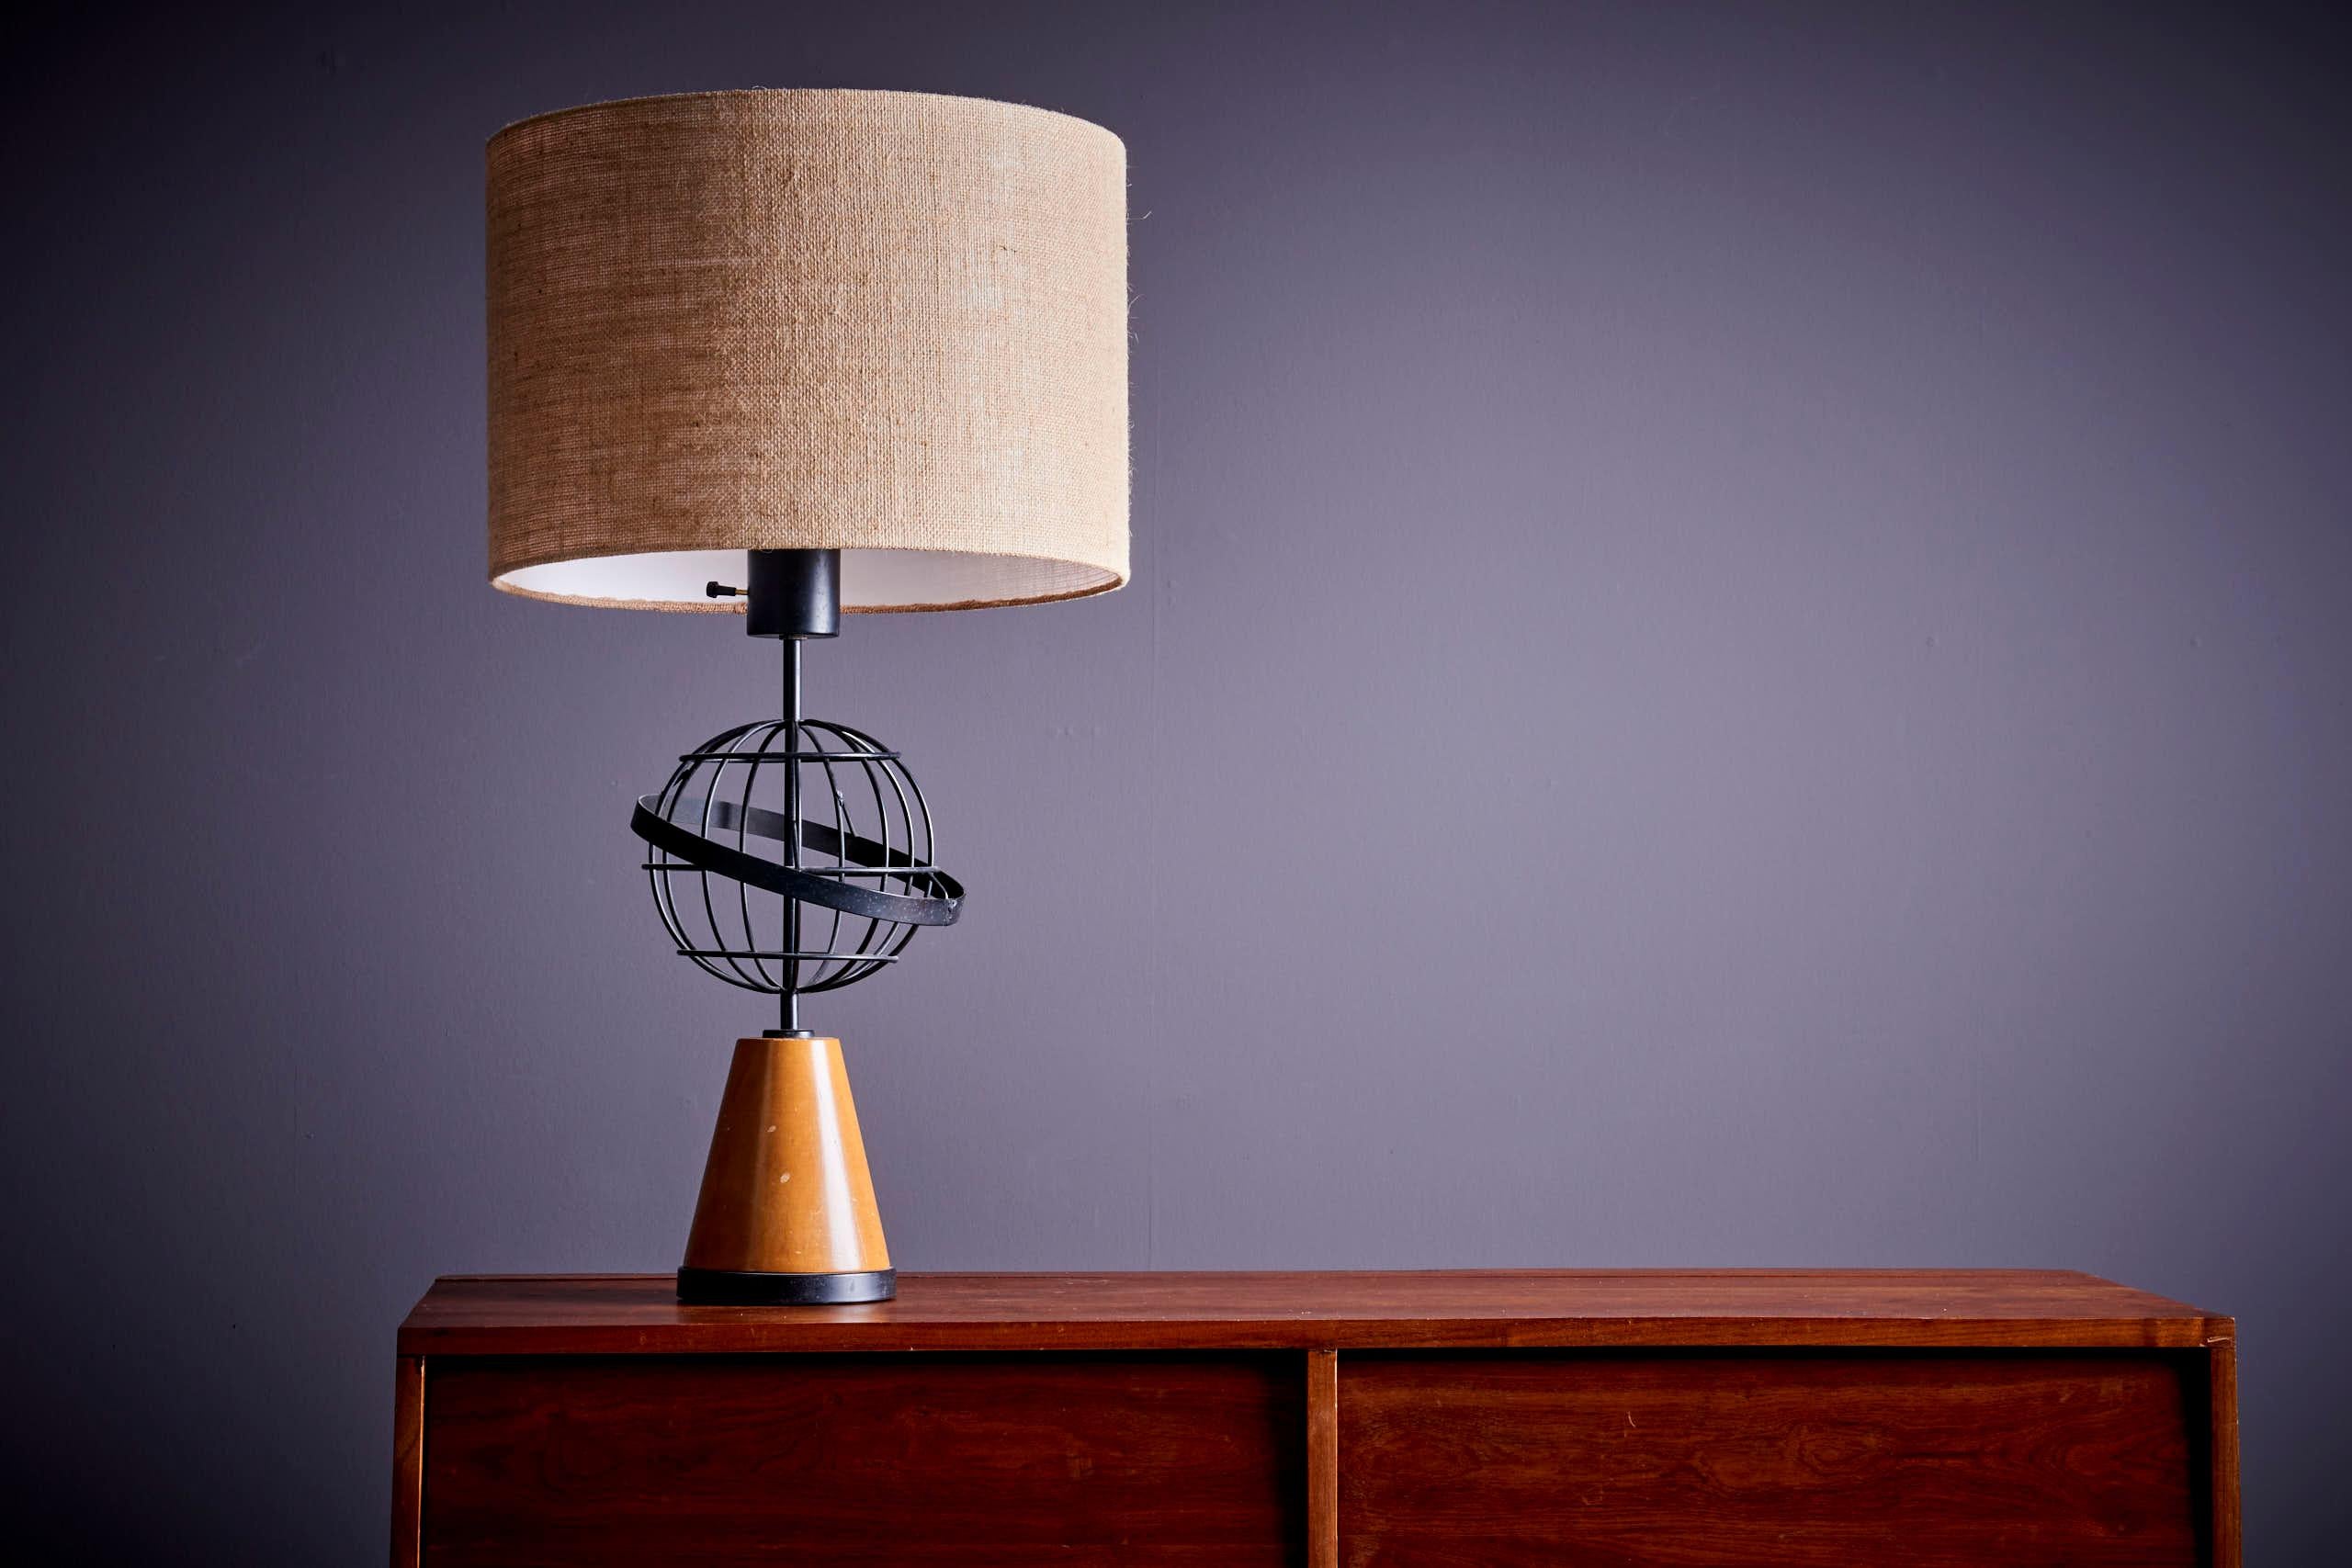 Tischlampe im Stil von Paul McCobb, USA - 1950er Jahre. Die angegebenen Maße beziehen sich auf den Leuchter. Das dekorative Metallelement misst 25 cm im Durchmesser. Die Lampe wird ohne den Schirm geliefert. 